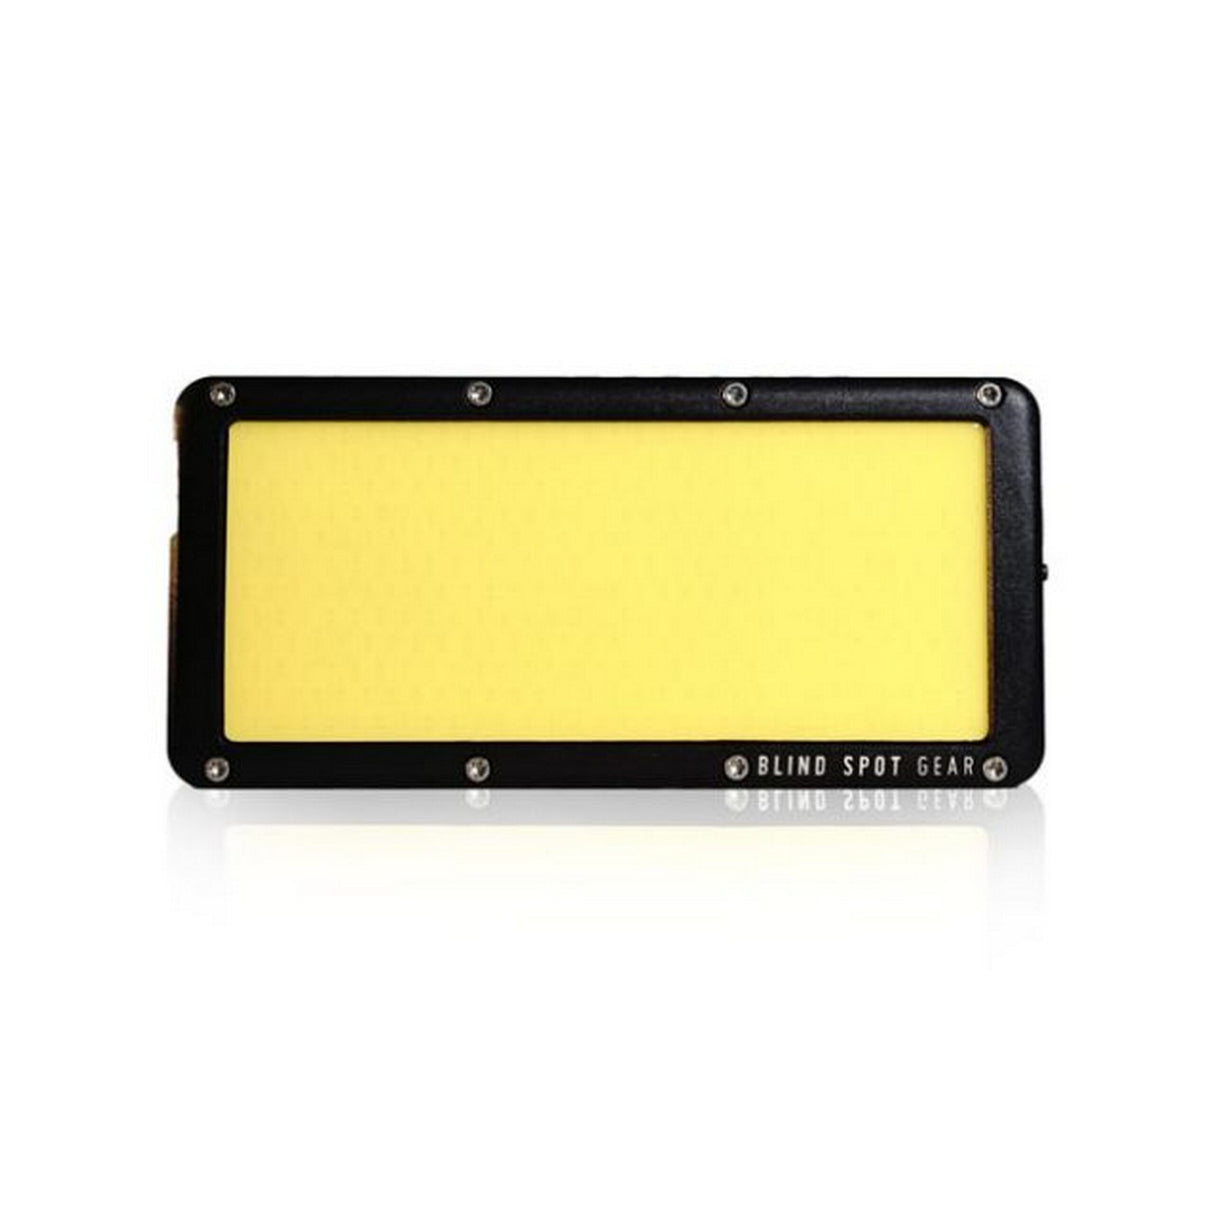 Blind Spot Gear Portable Tile Solo 5700K Light, 1102-001-01